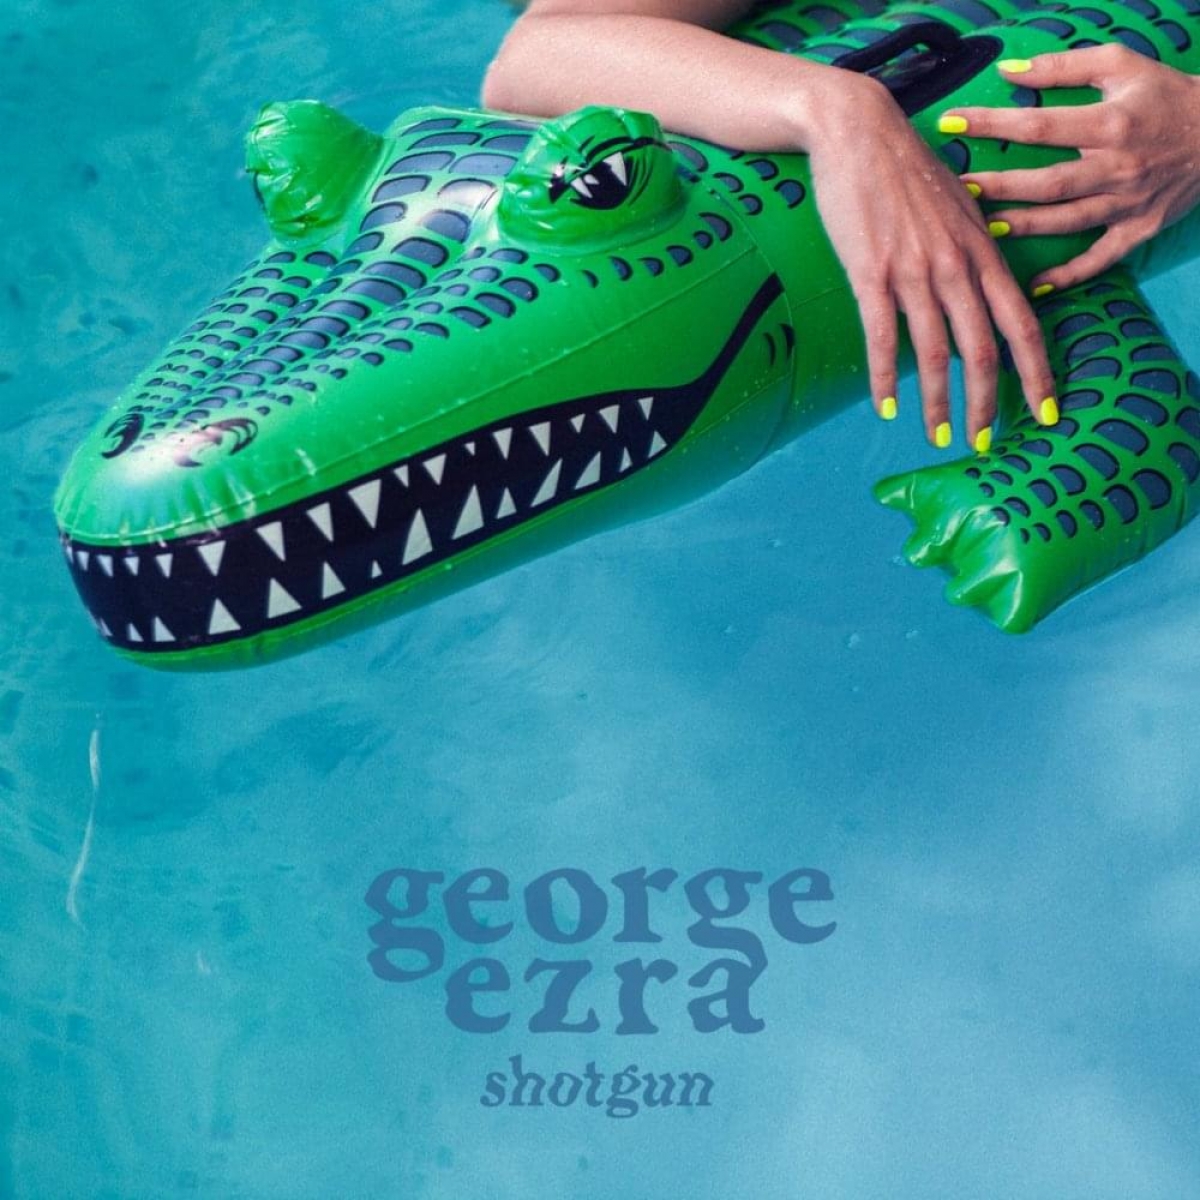 GEORGE EZRA - Shotgun